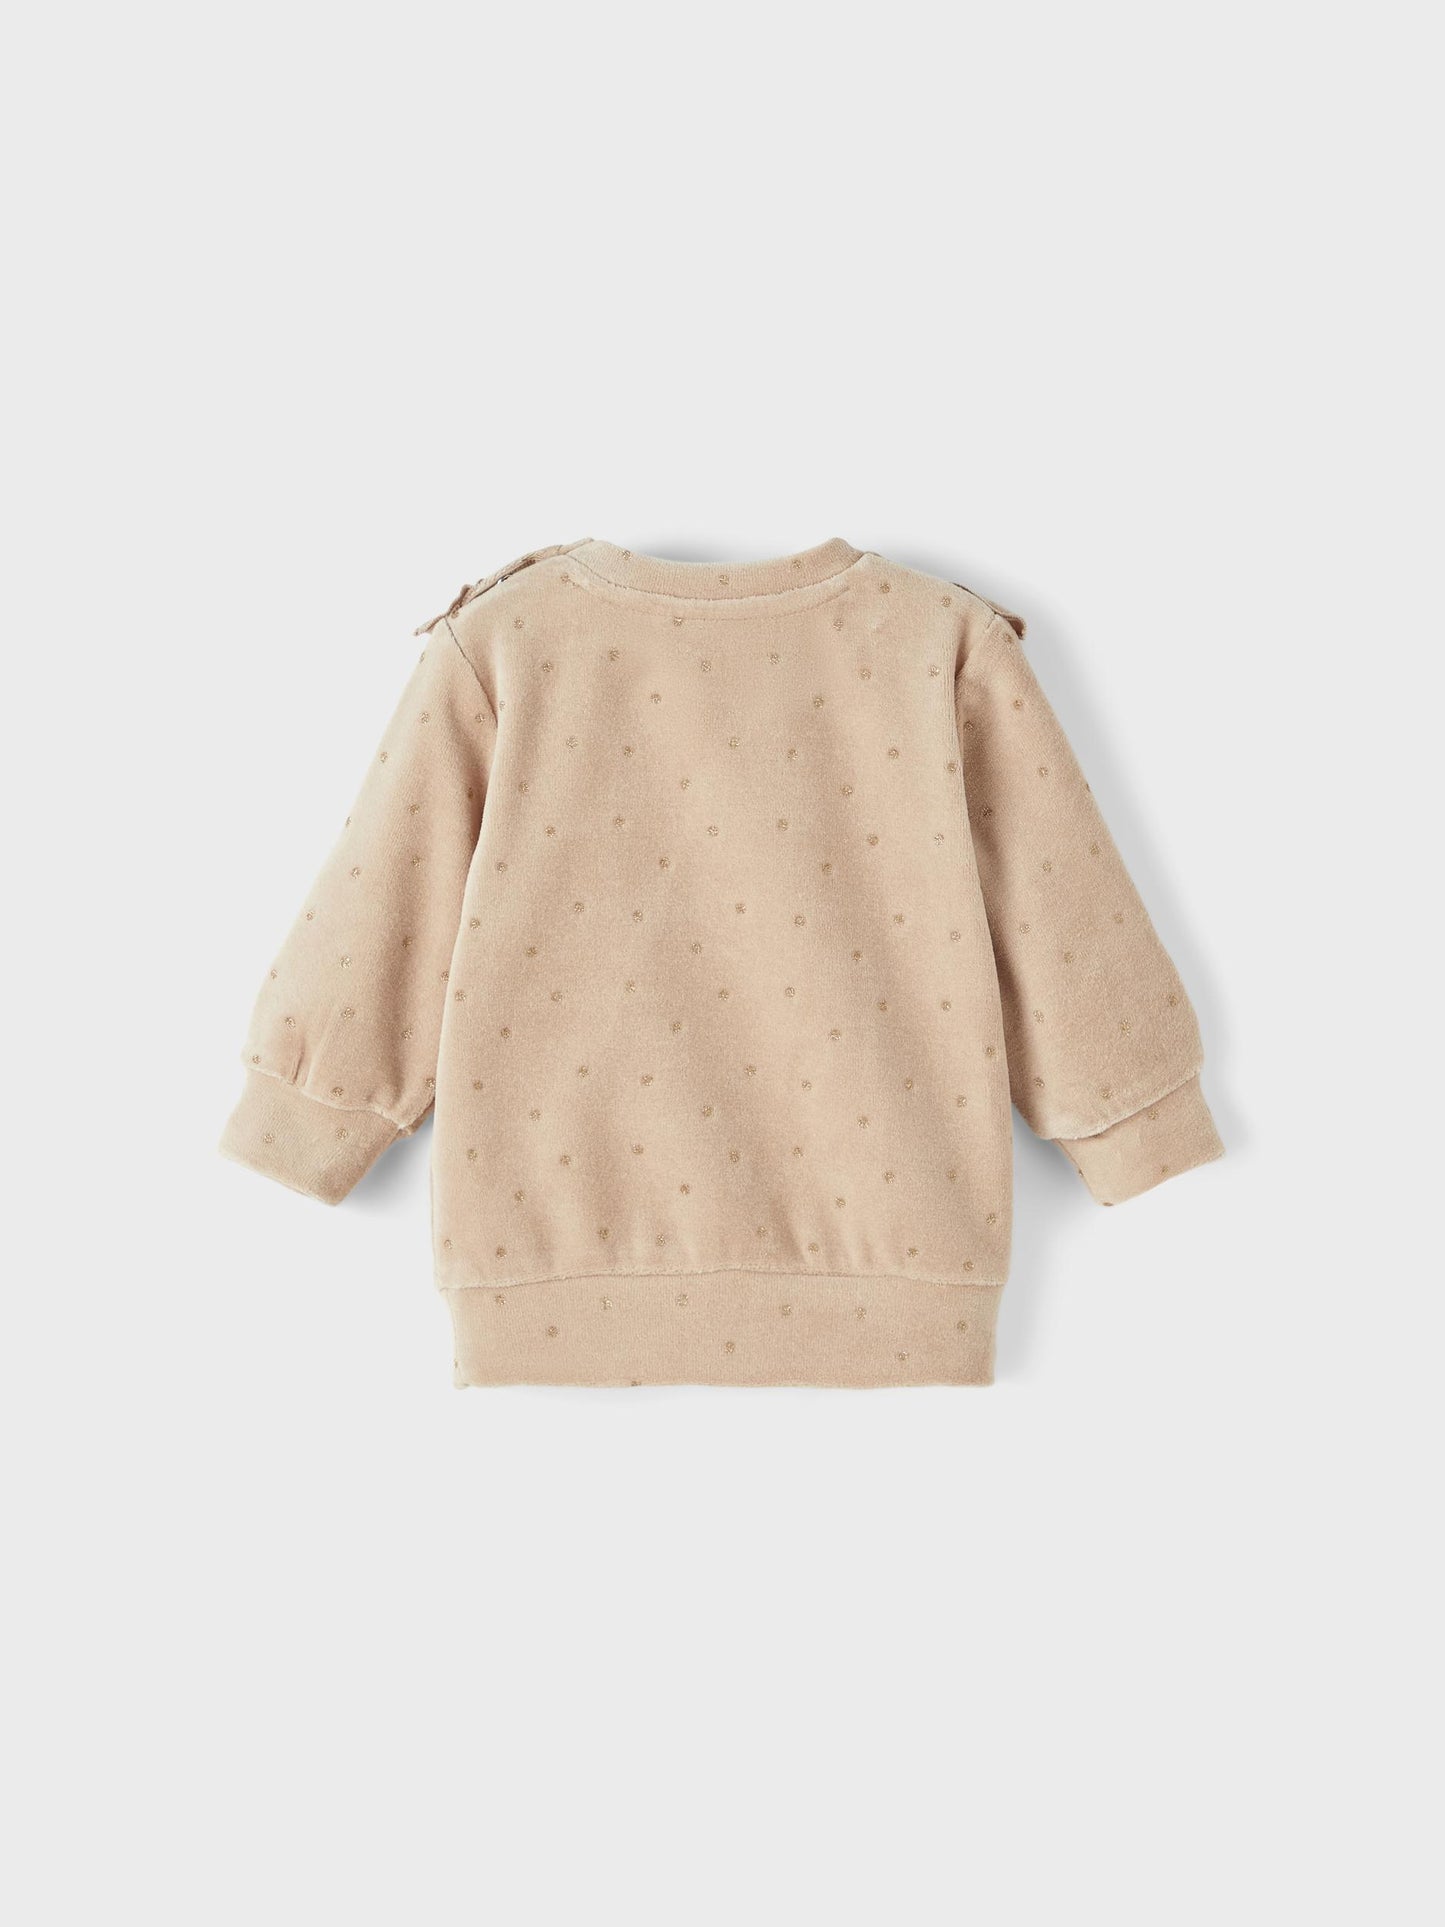 Name it - sweater - Oxford tan